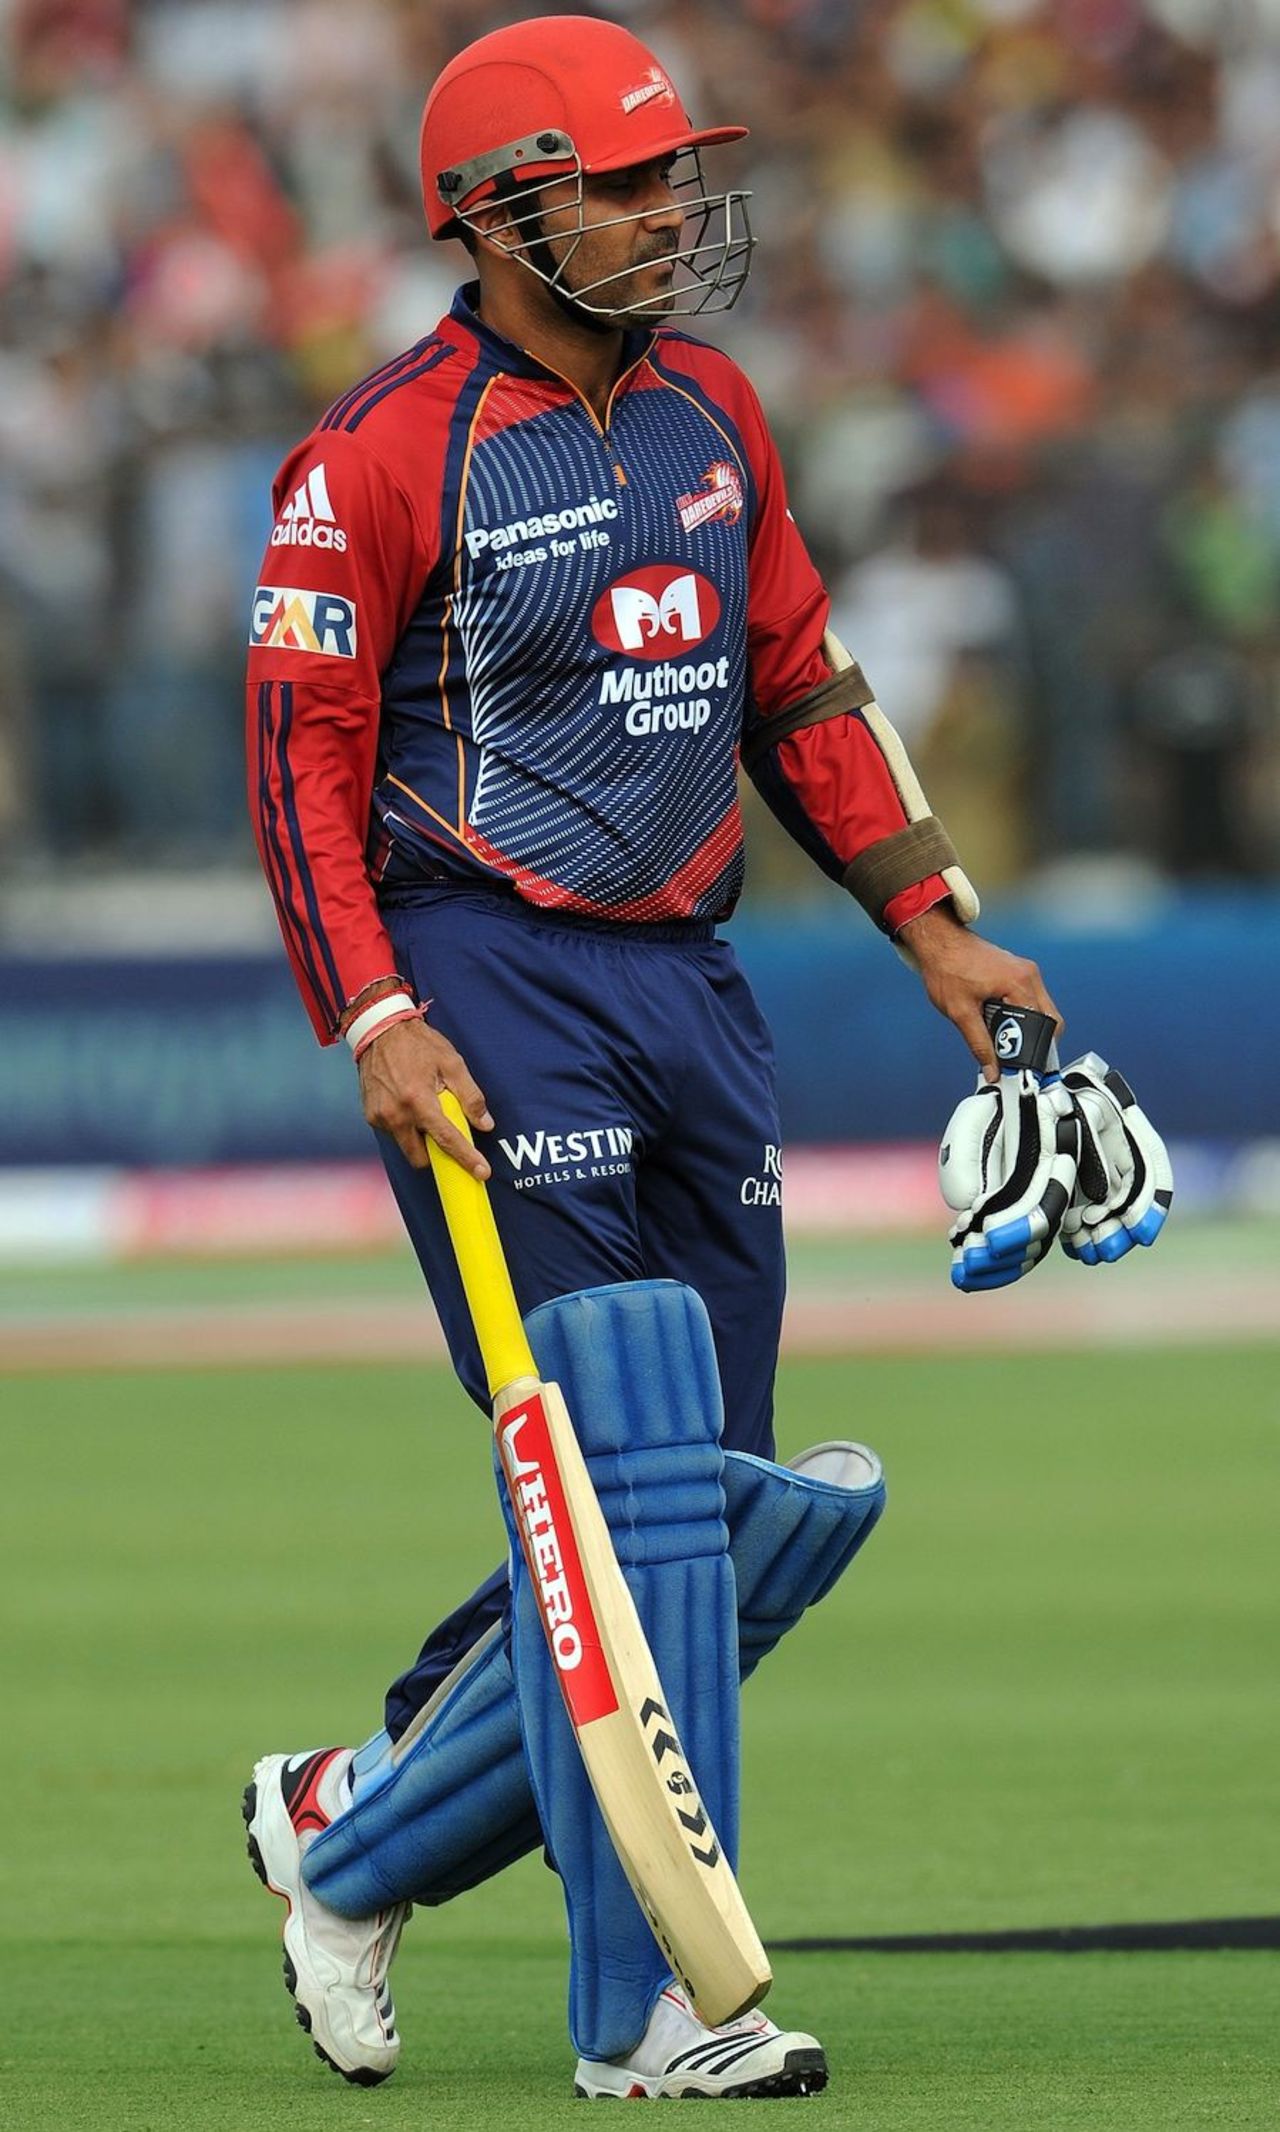 Virender Sehwag was dismissed for 4, Rajasthan Royals v Delhi Daredevils, IPL 2011, Jaipur, April 12, 2011